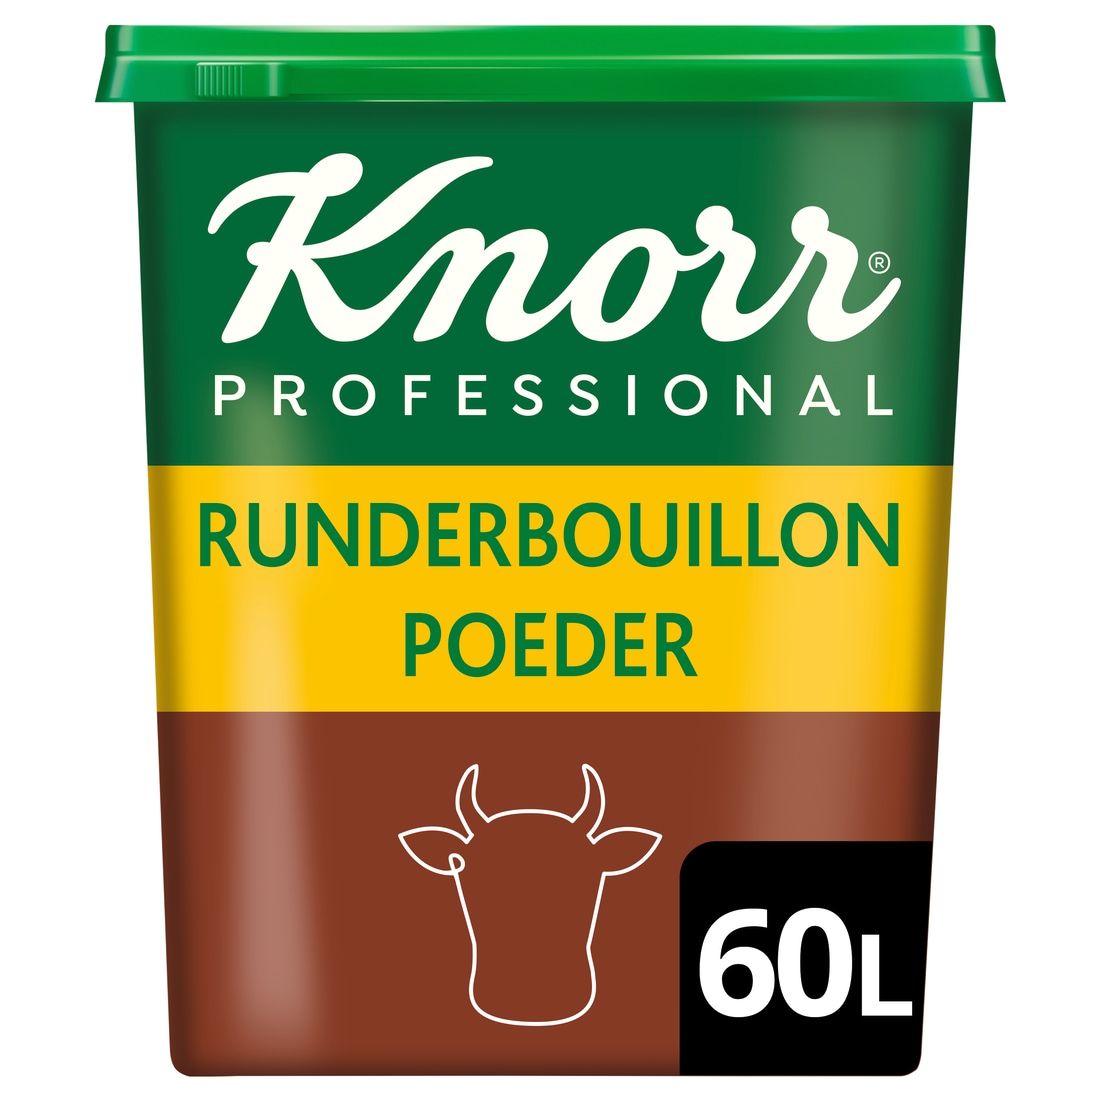 Knorr Professional Runderbouillon poeder krachtig 60L - 